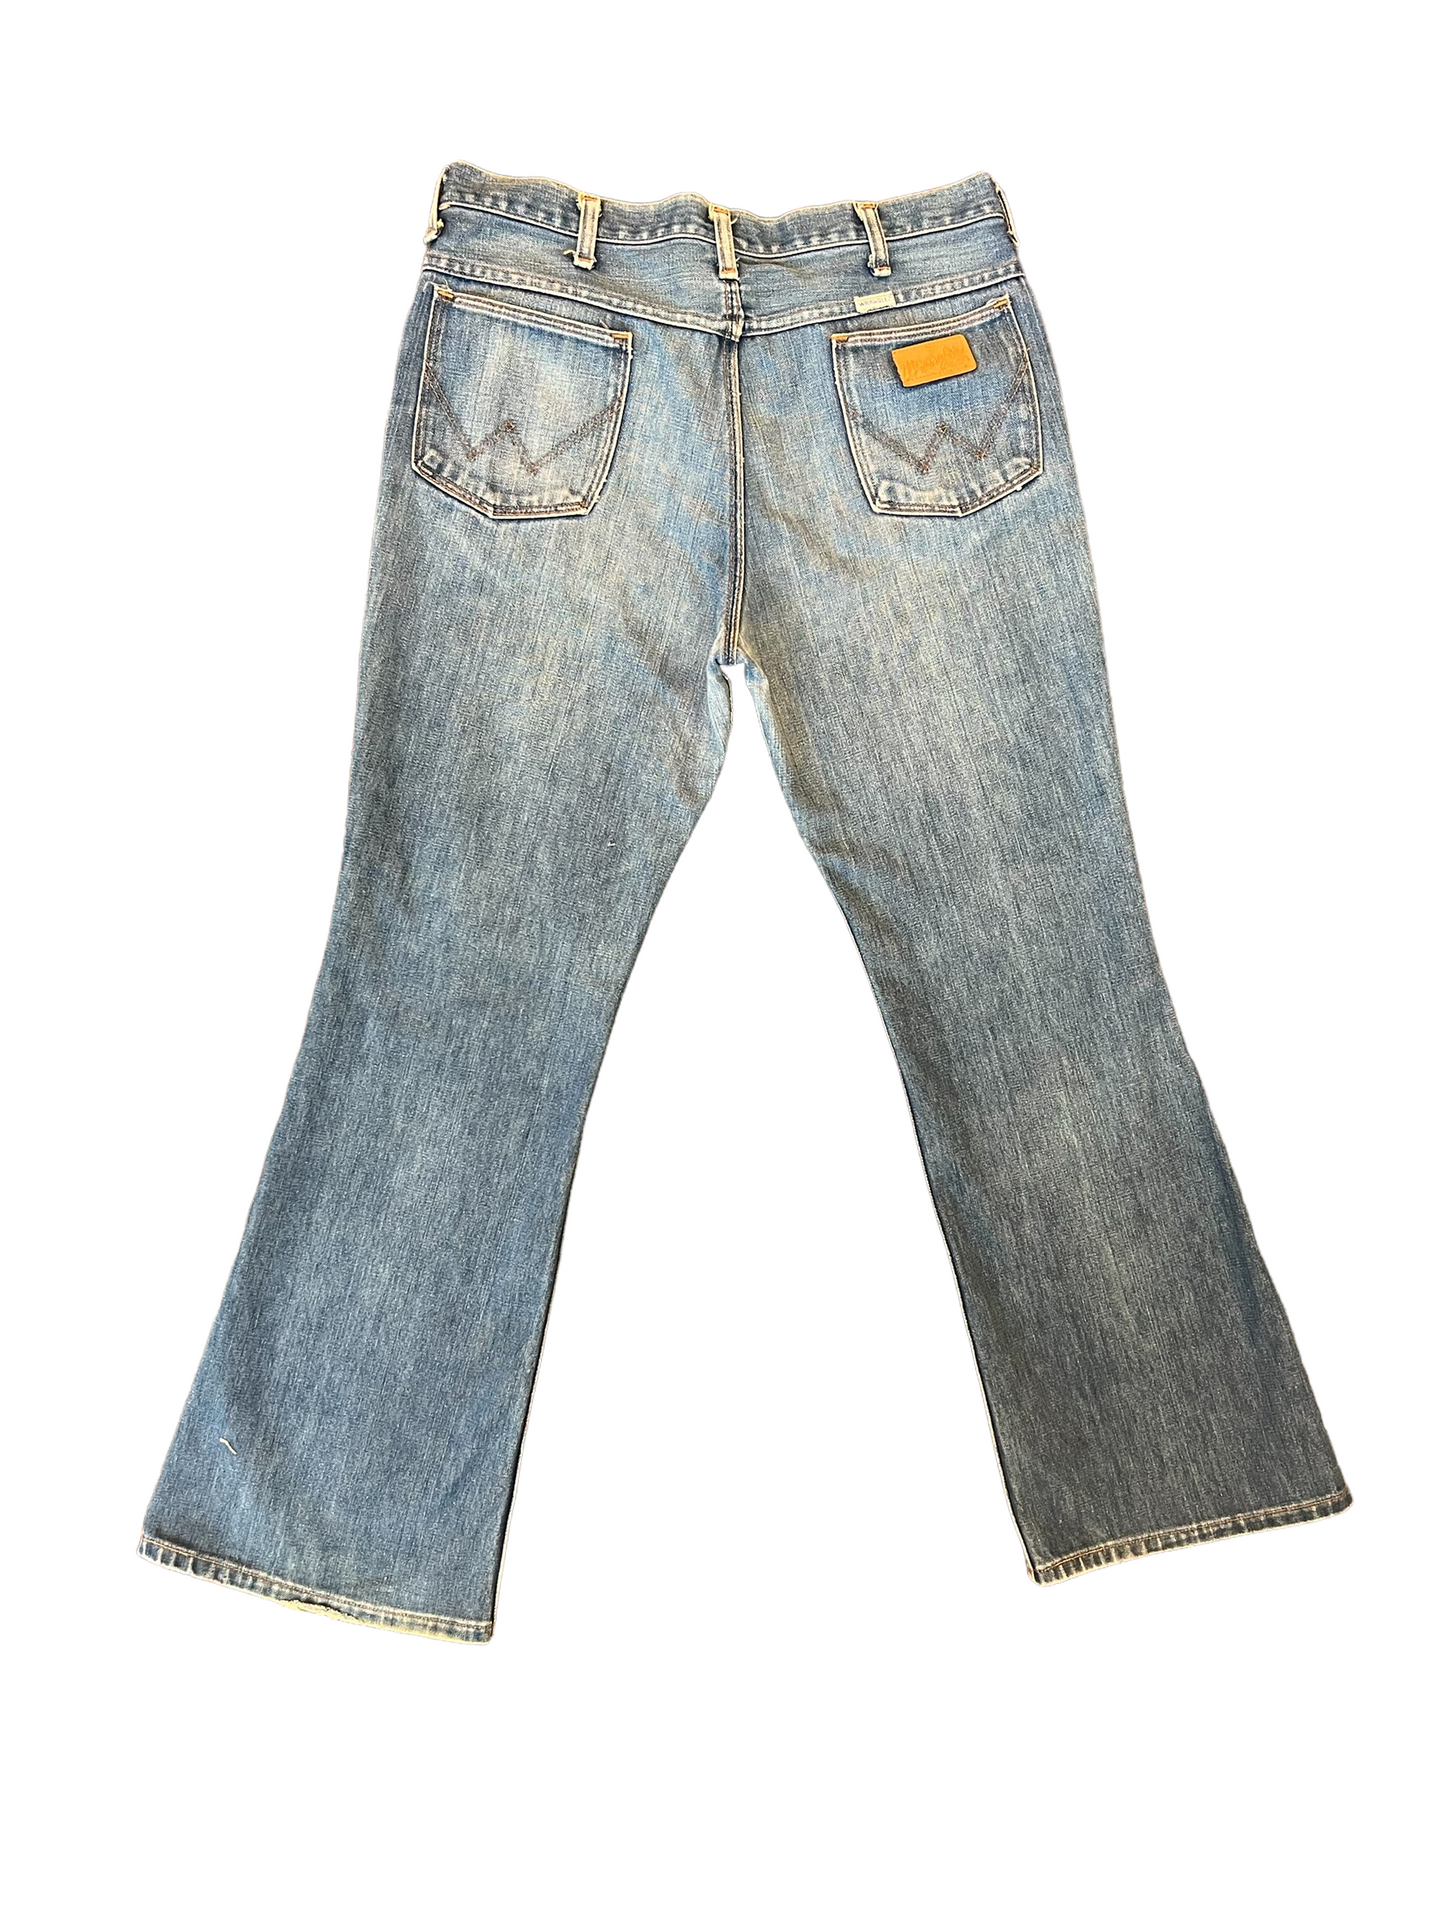 1970s Light Wash Wrangler Jeans